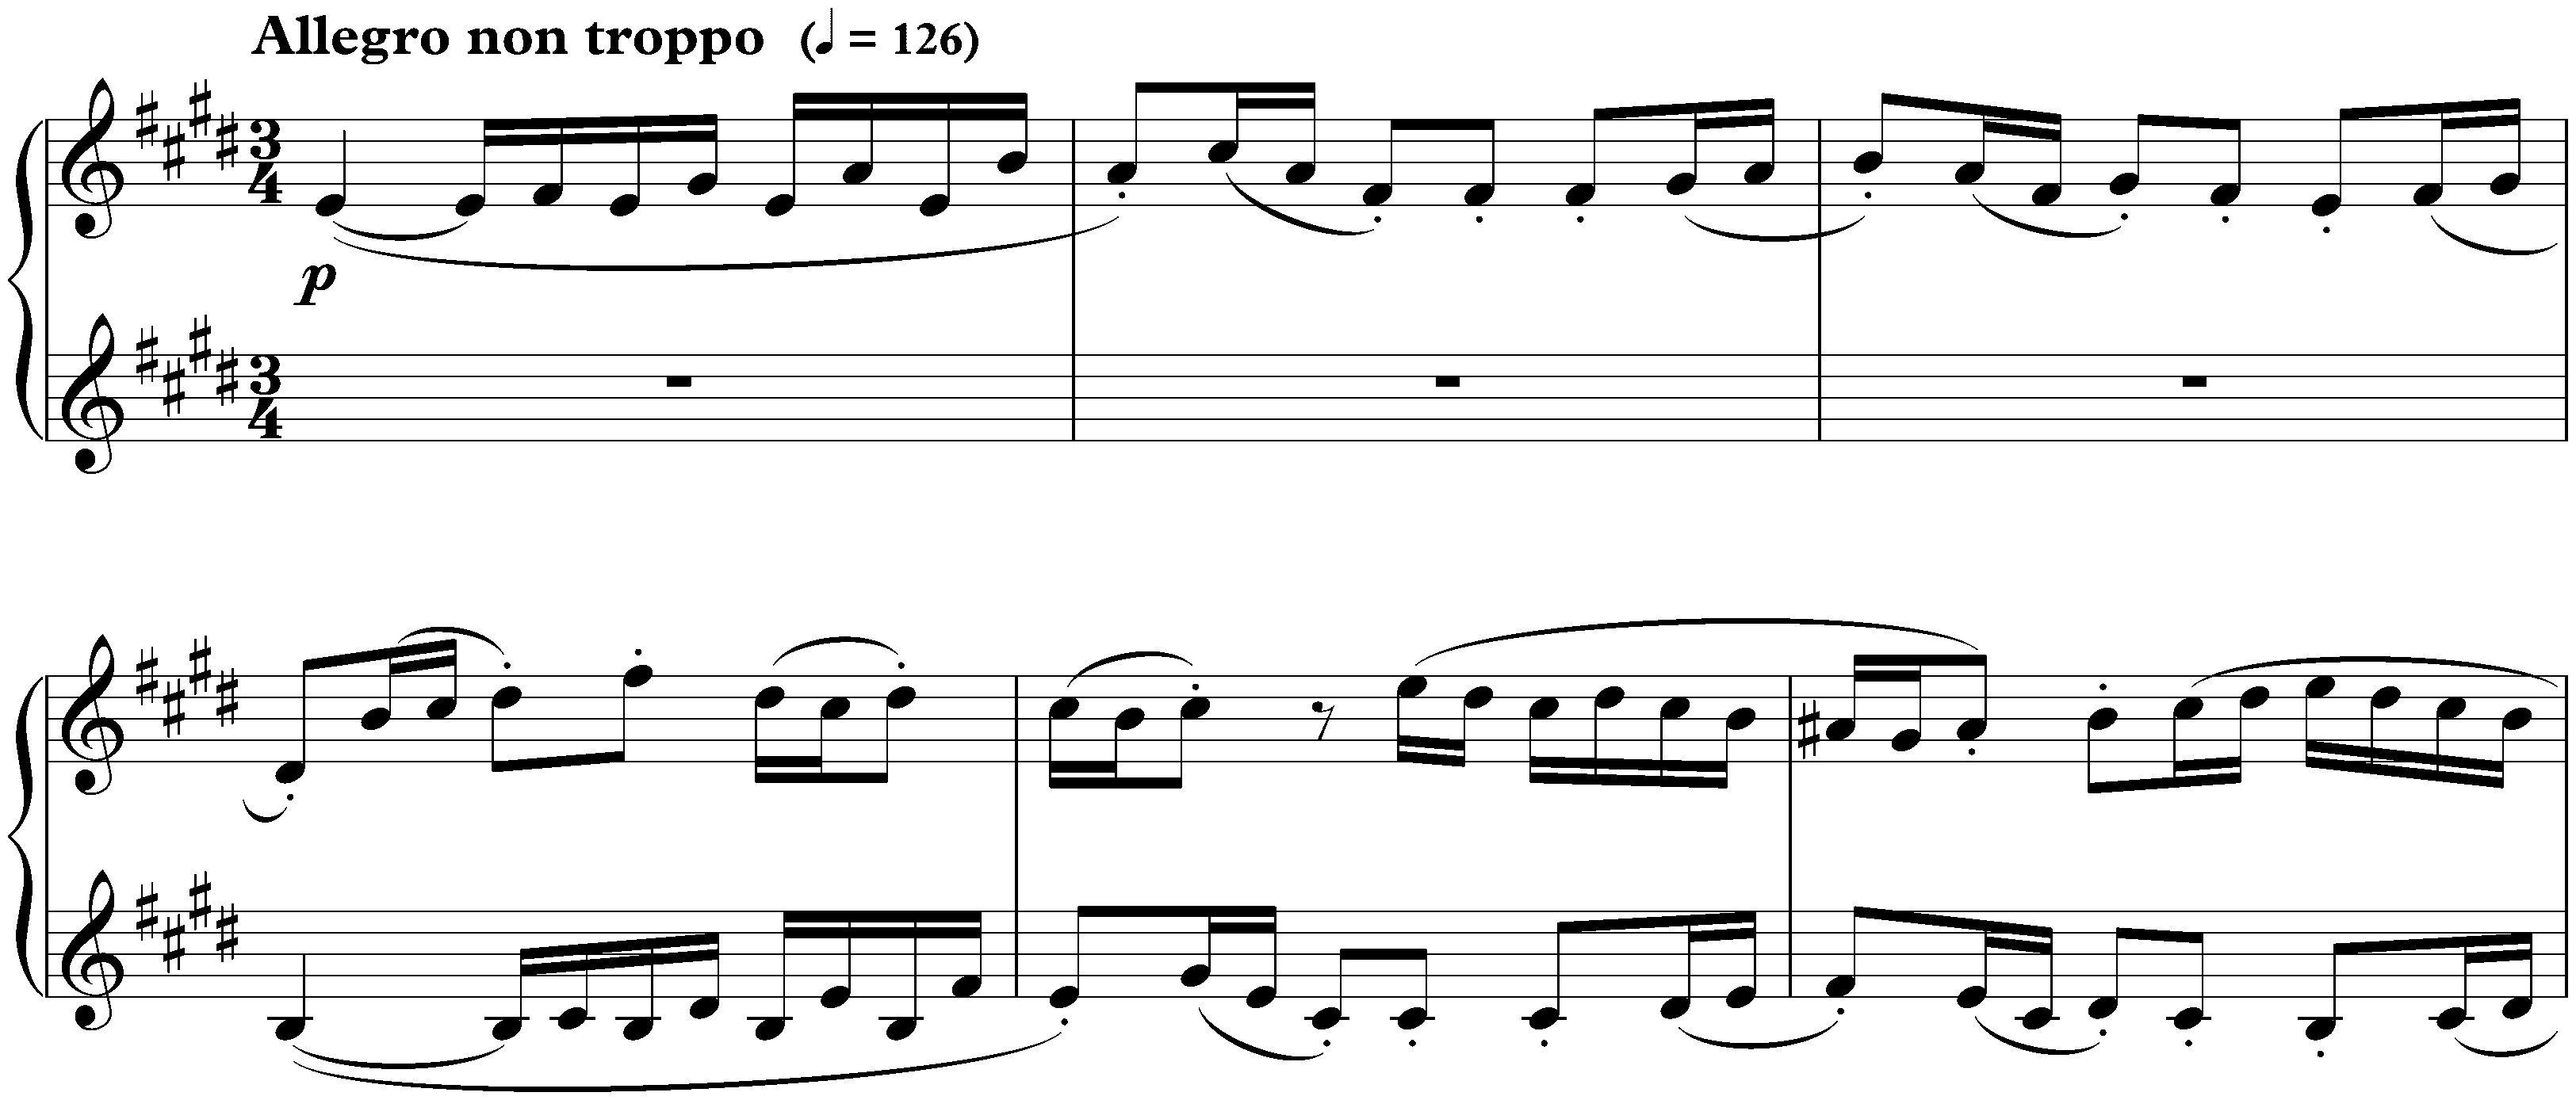 Twenty-four Preludes and Fugues, op. 87; 9. E major, Fugue